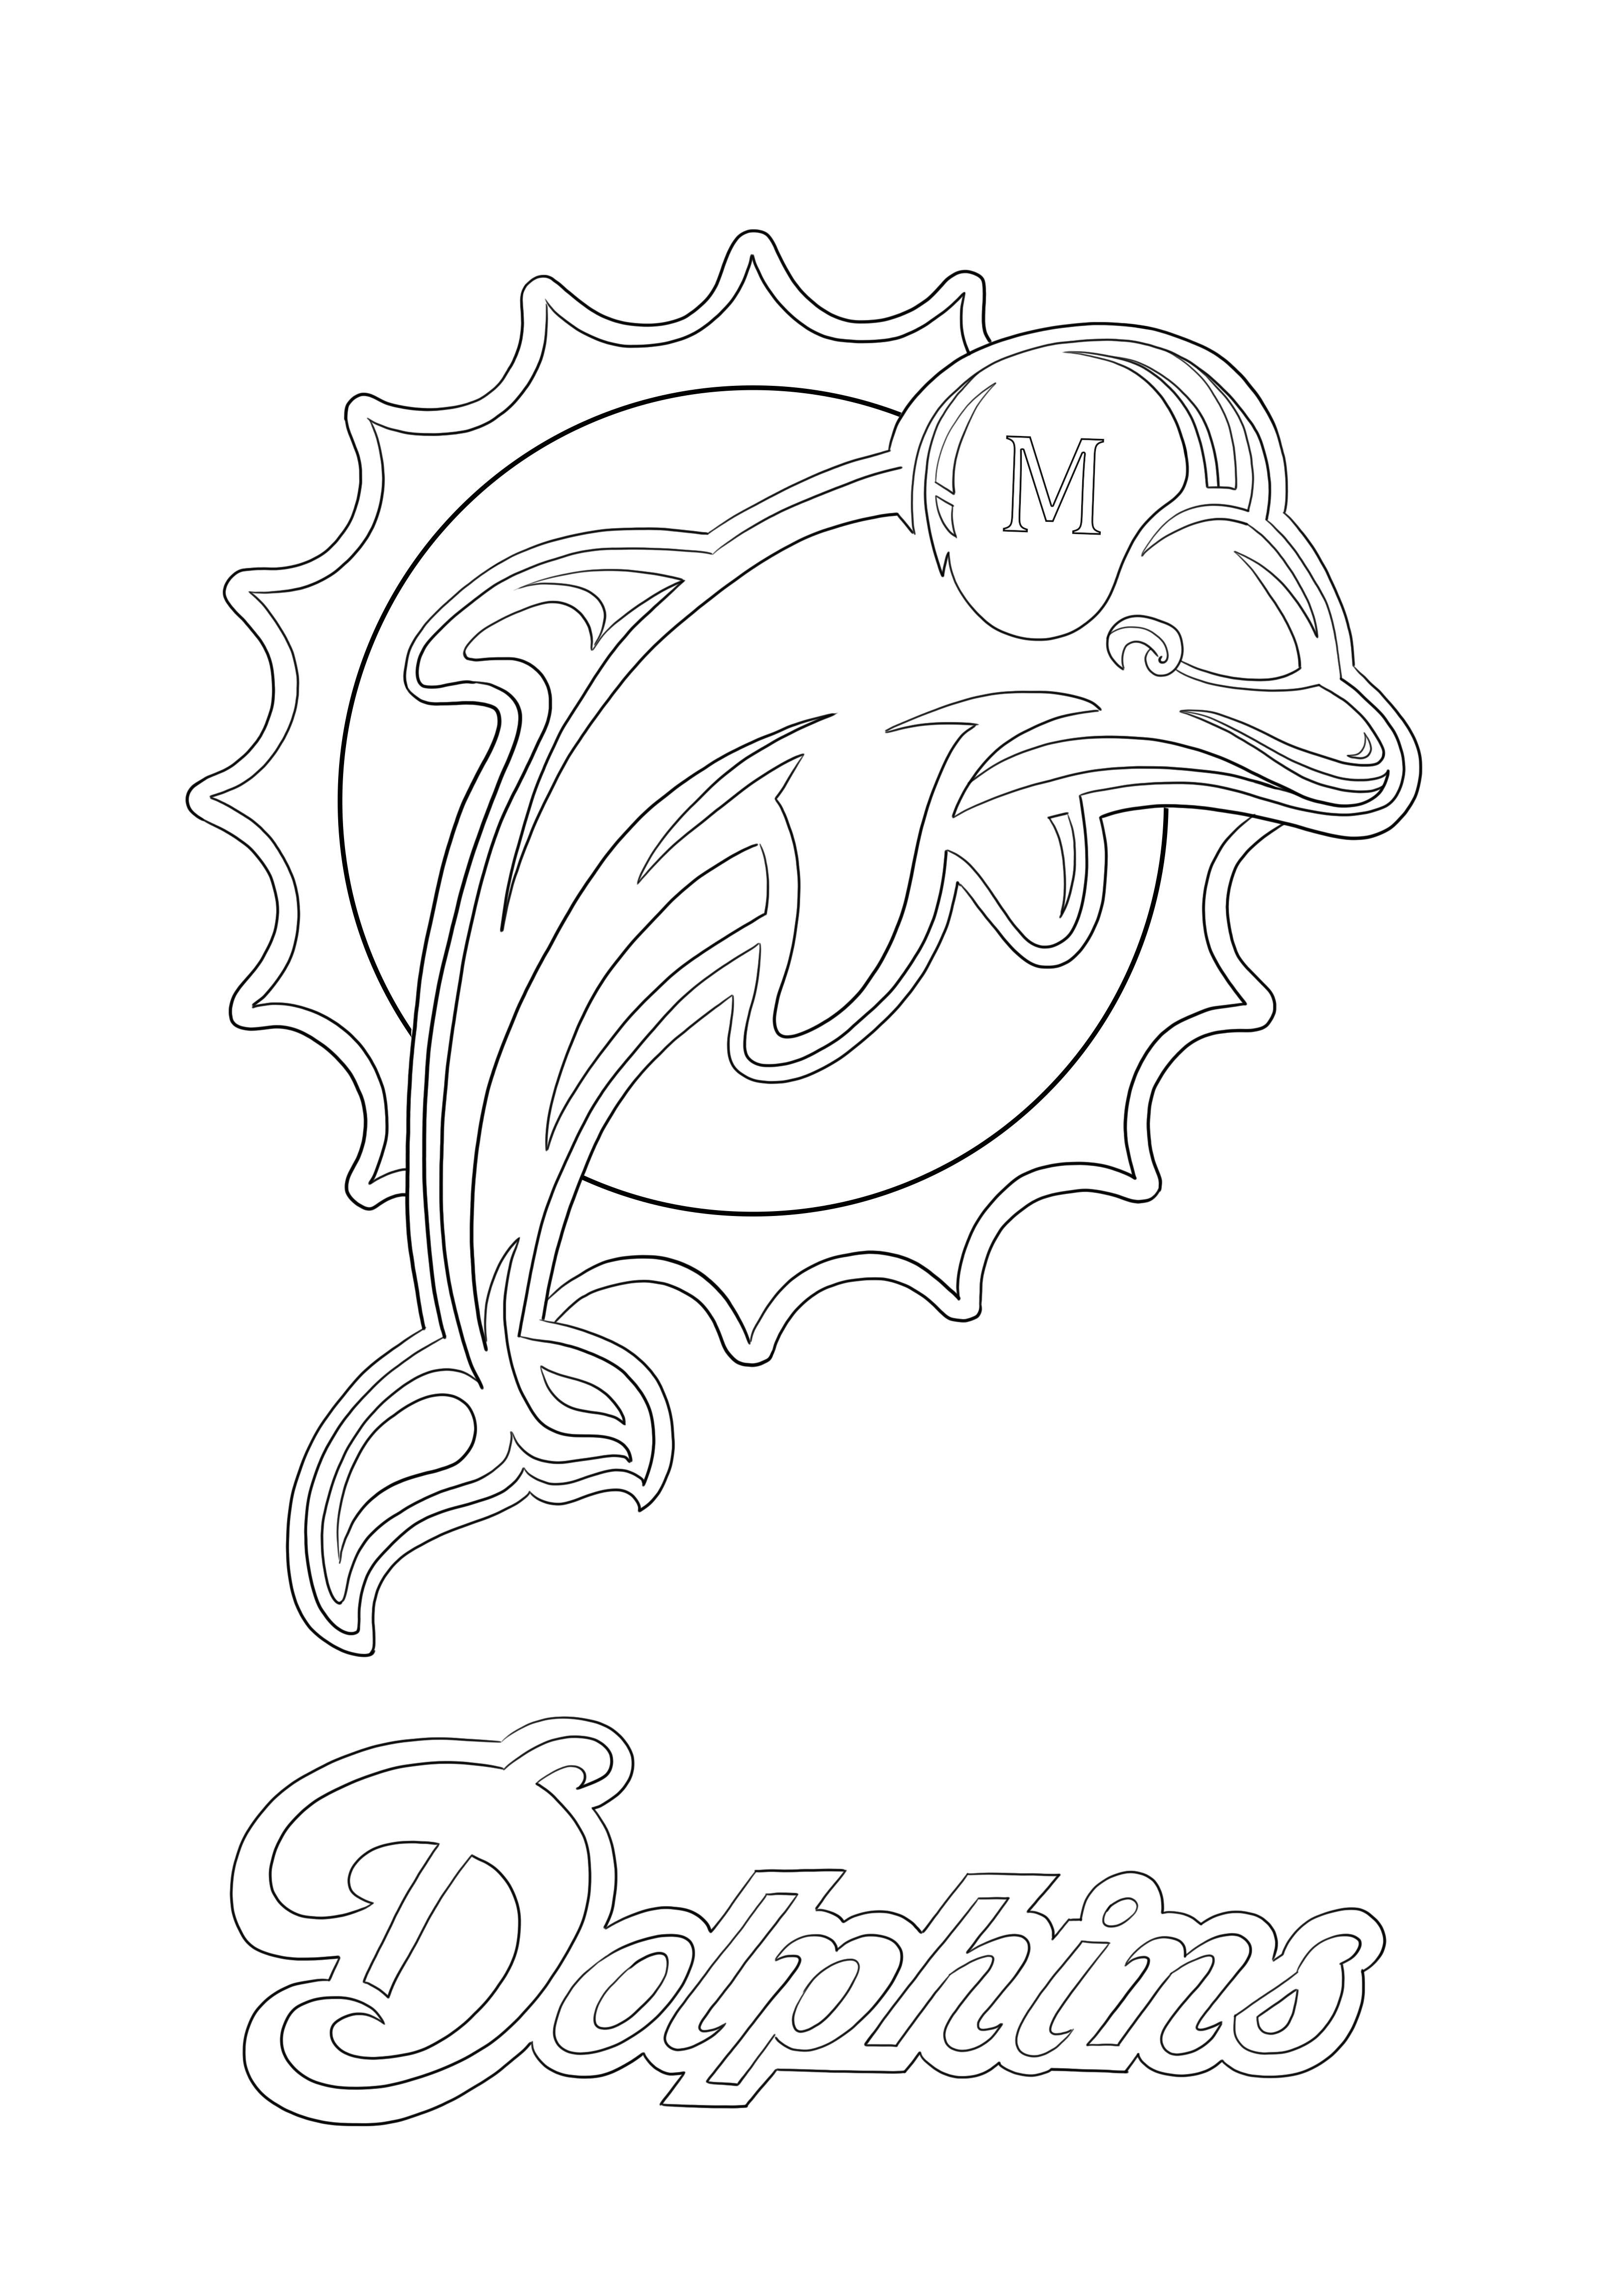 Desenho do logotipo do Miami Dolphins para colorir e imprimir